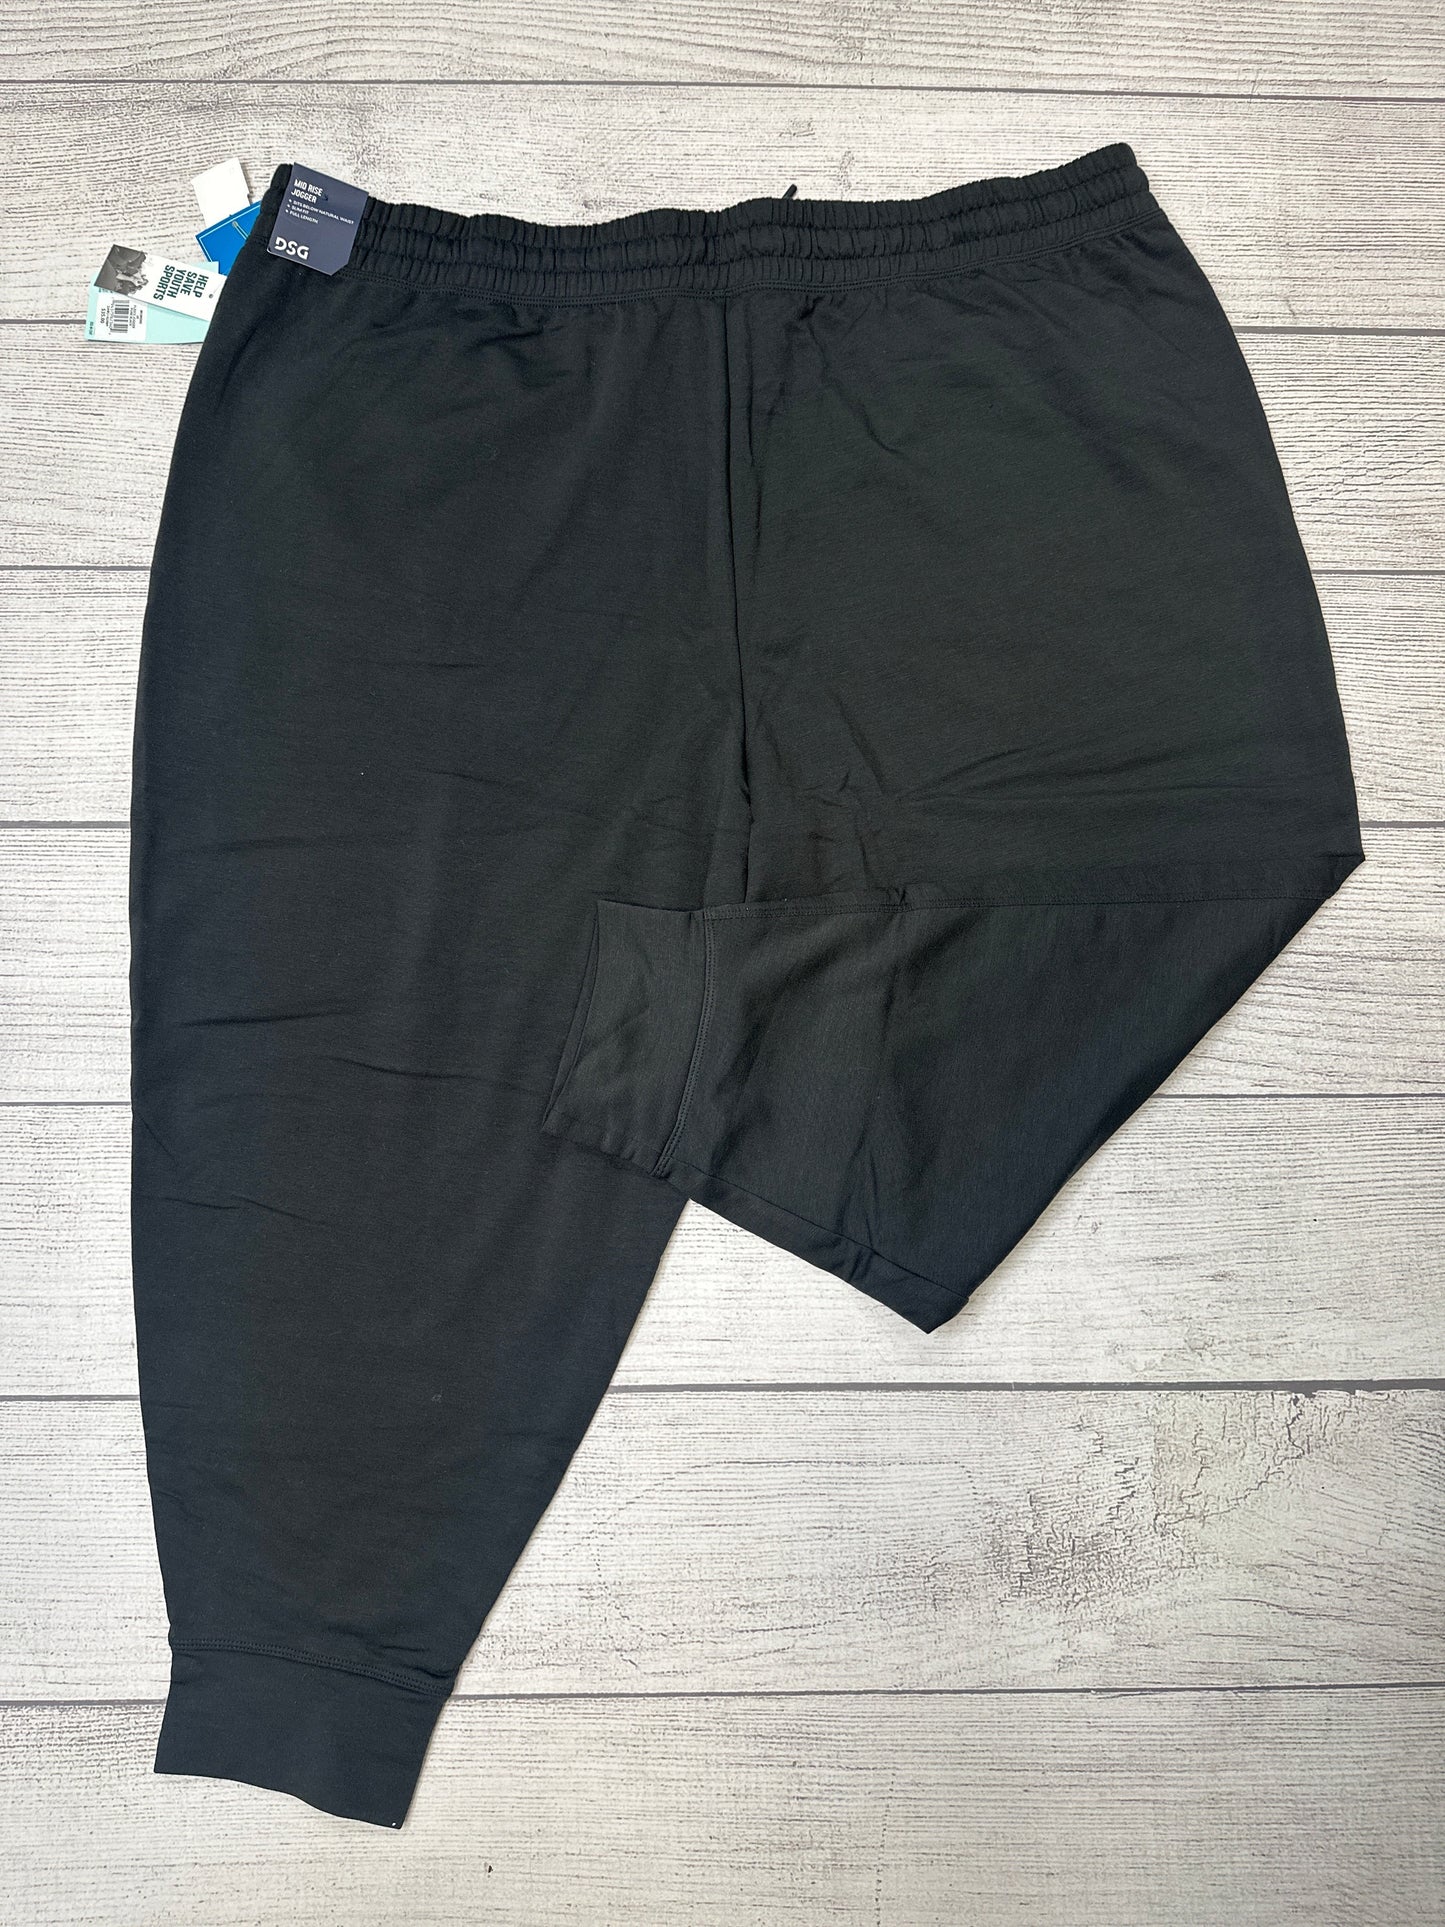 Black Athletic Pants Dsg Outerwear, Size 3x